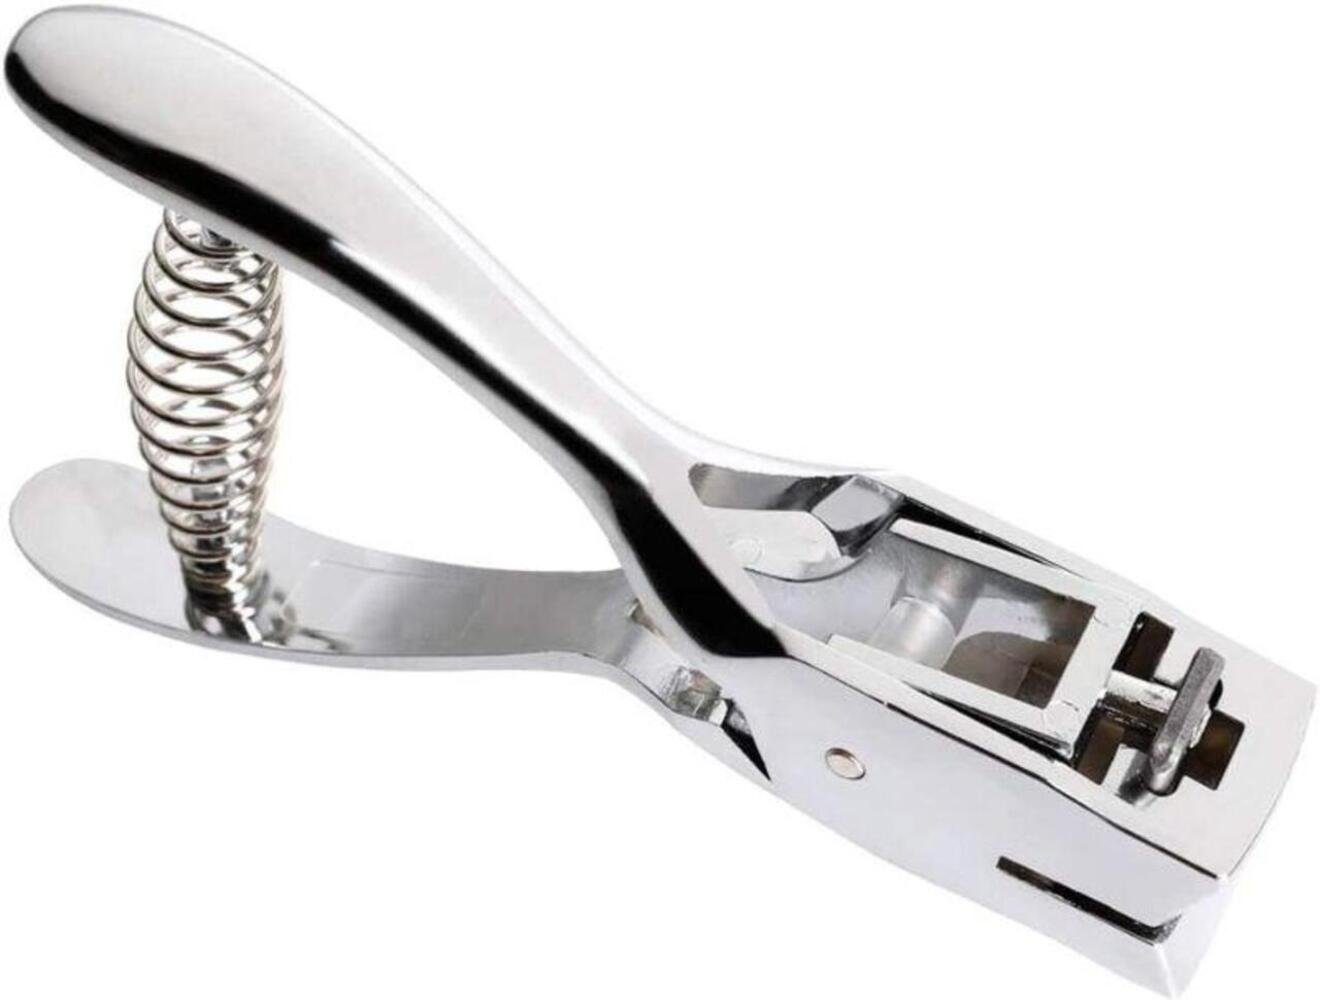 Einemgeld Revolverlochzange Metall Silber Hand-Held Hole Punch RechteckSlot Form Zange